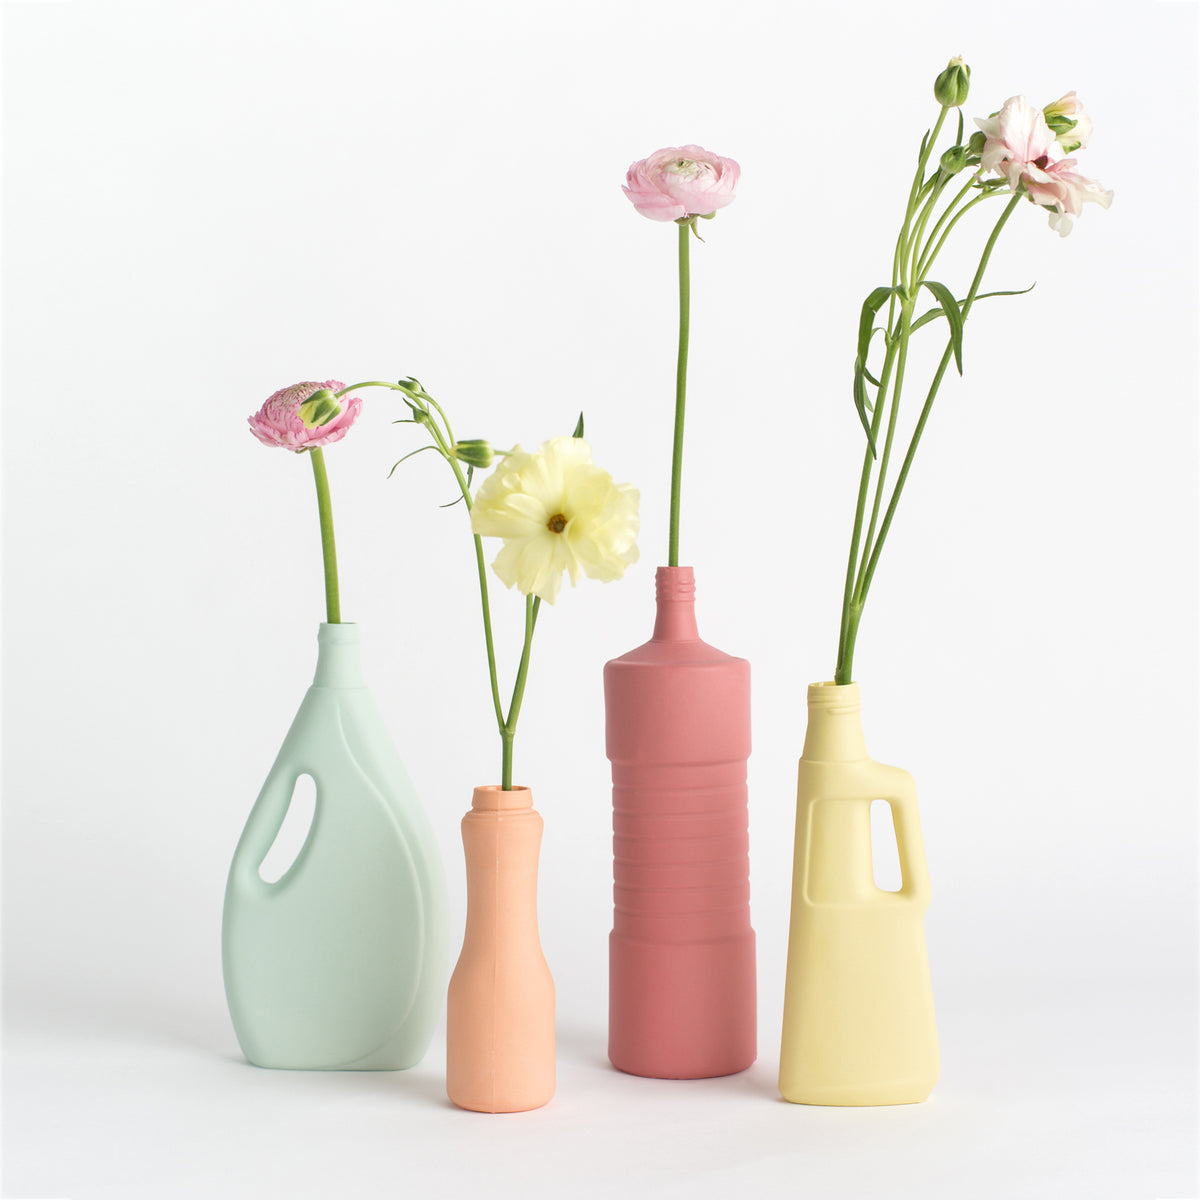 Porzellan-Vase #7 von Foekje Fleur bei Wilhelm die 3.